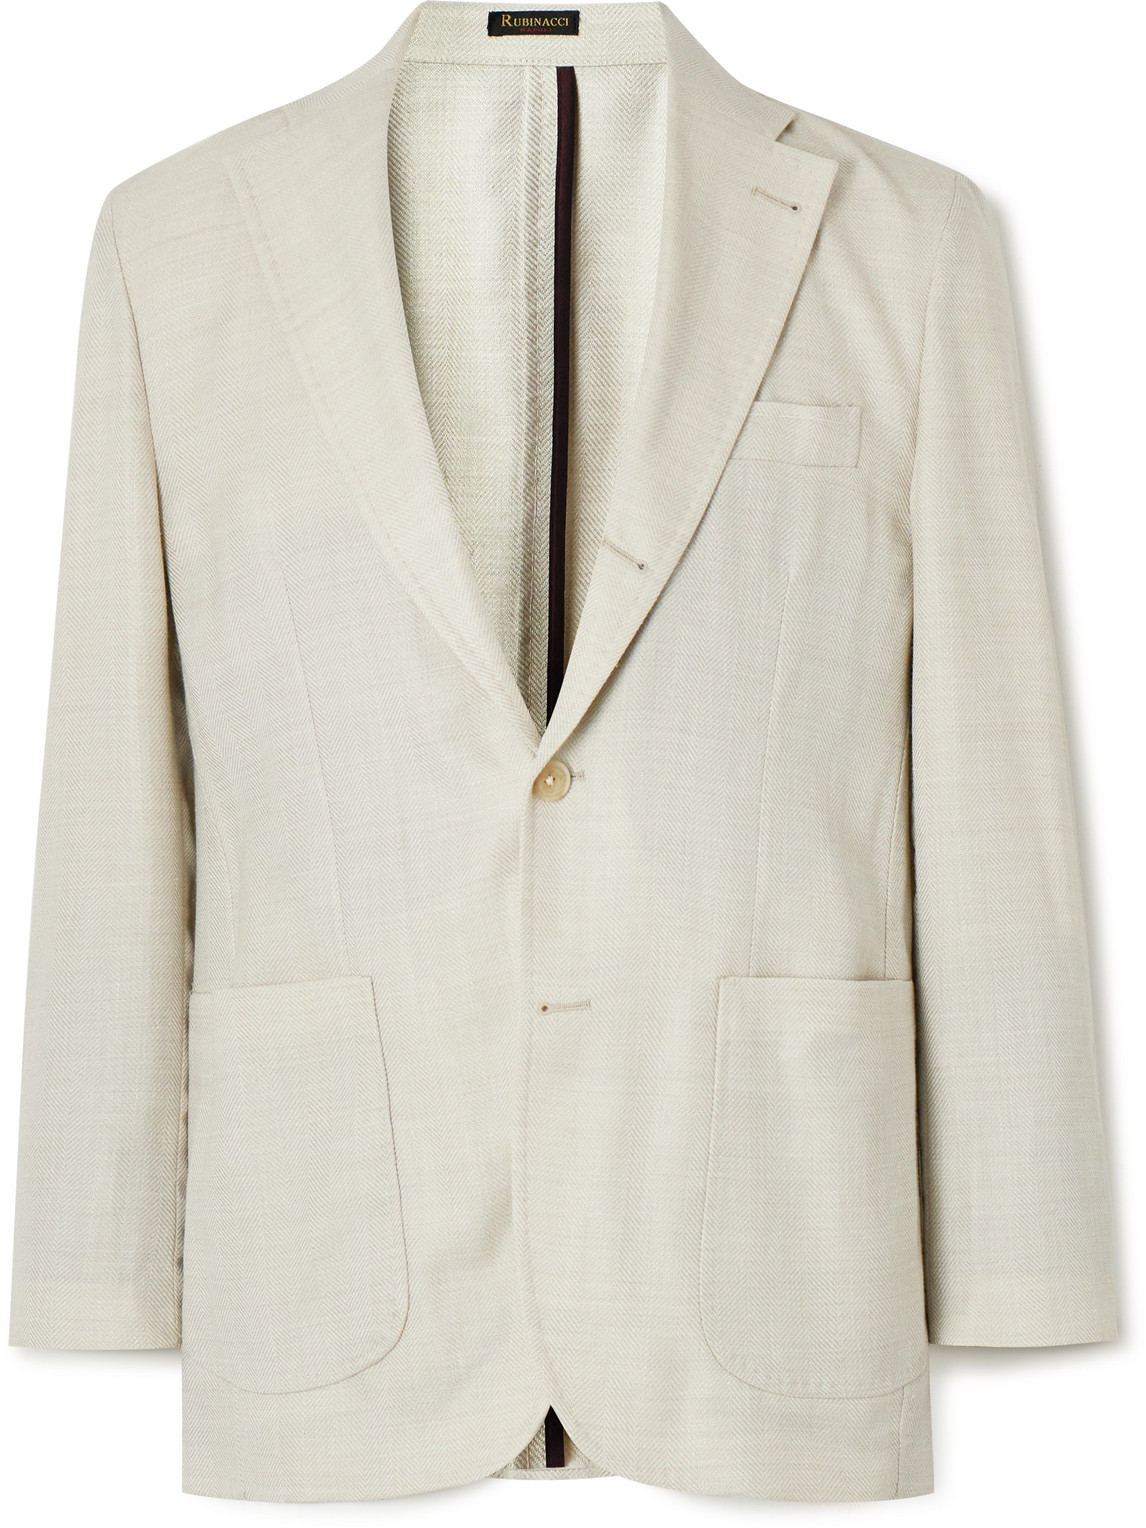 Herringbone Wool, Silk and Linen-Blend Suit Jacket